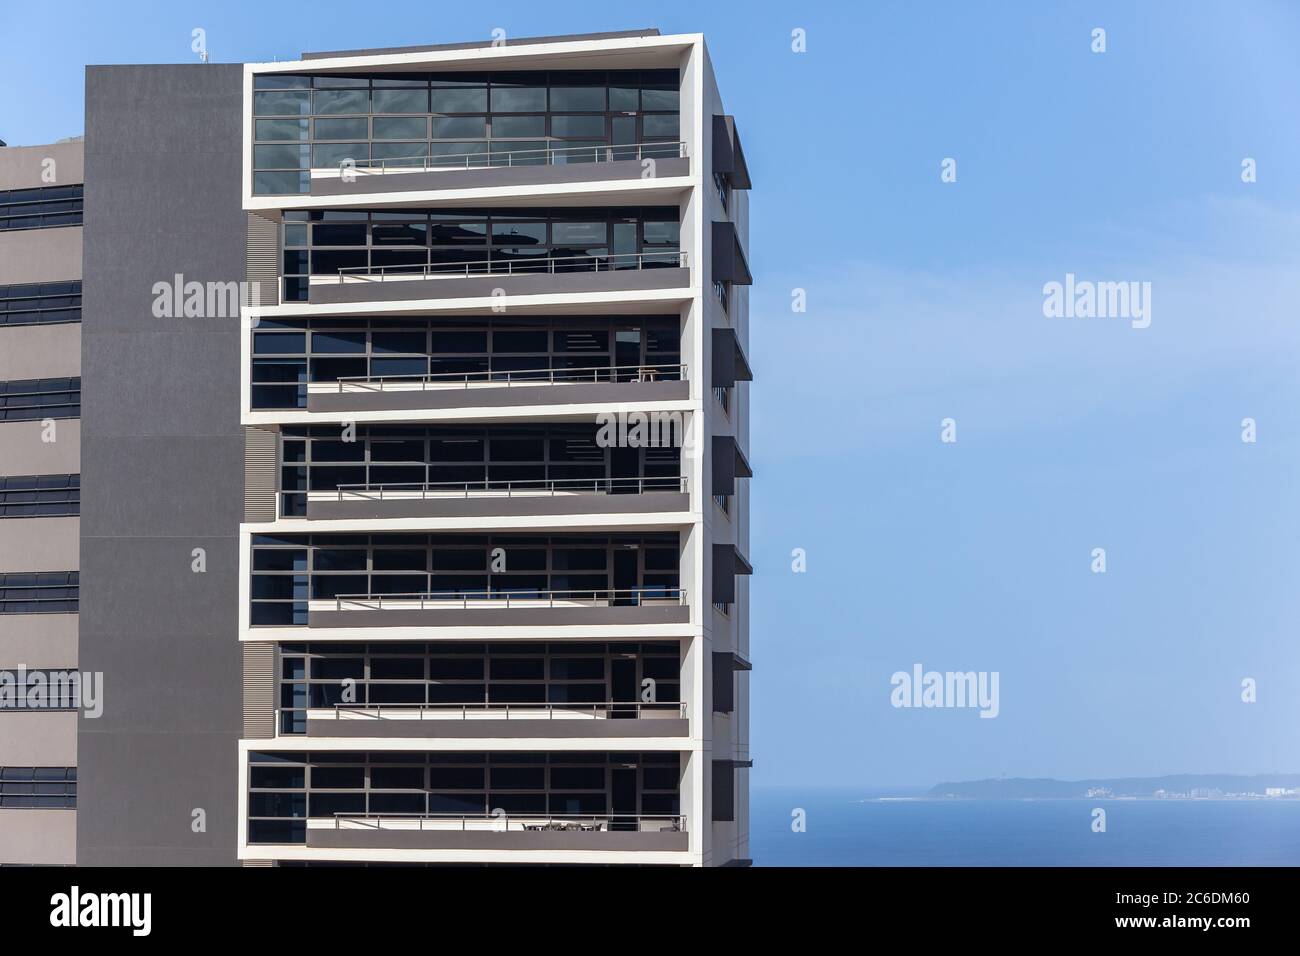 Neues modernes Bürogebäude mit Blick auf blauen Himmel und Meer Wasser Foto Abschnitt der Etagen mit Balkon Veranden. Stockfoto